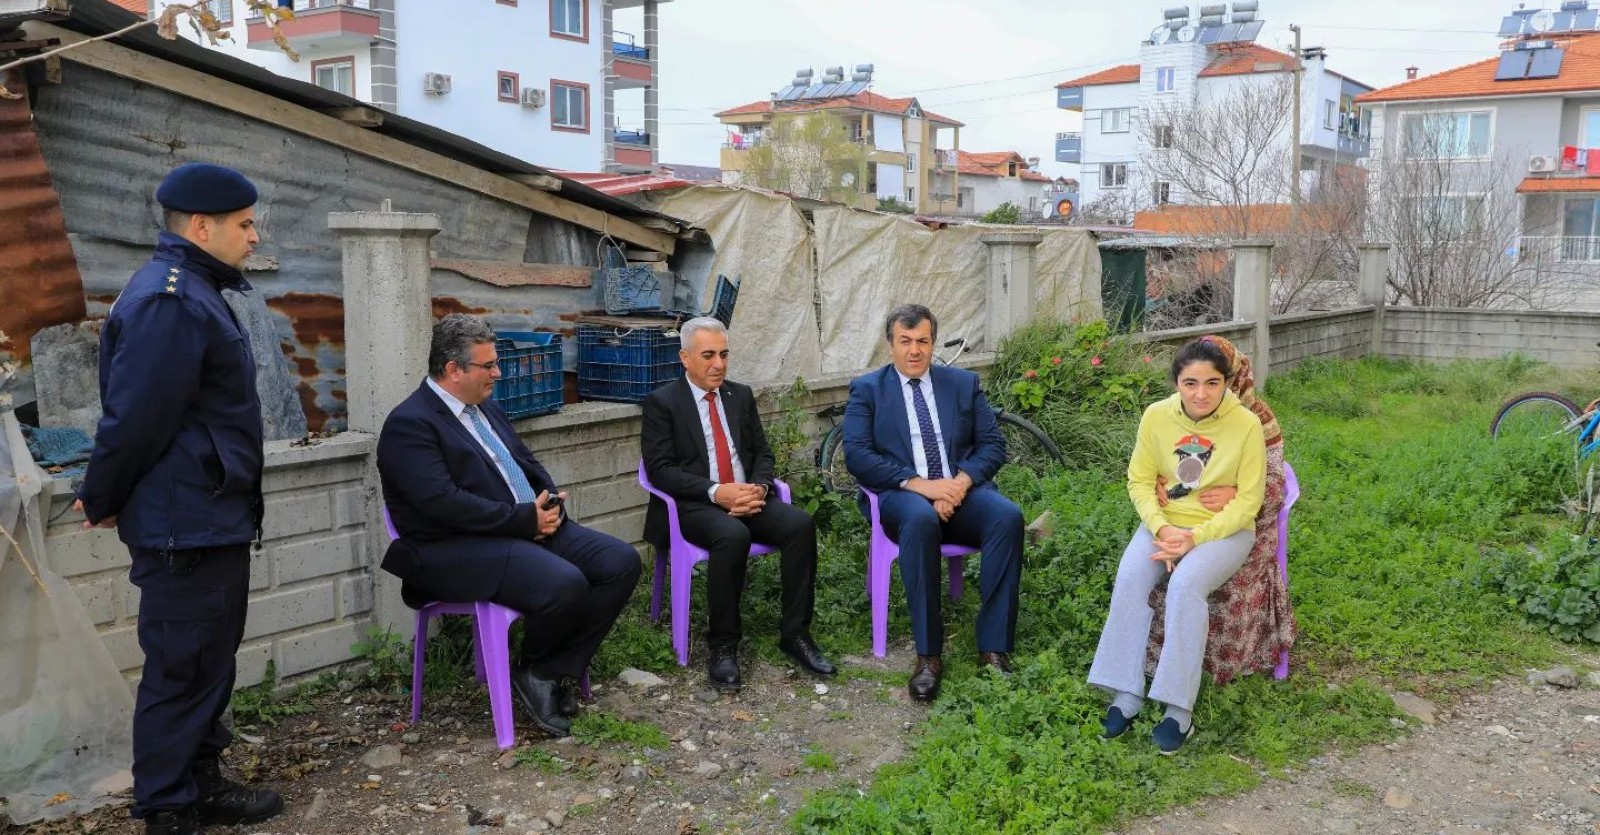 Kaymakamımız Mesut Yakuta ve Belediye Başkanımız Muhammet Karakuş, ilçemiz Merkez Mahallesi' nde hane ziyaretlerinde bulundular.